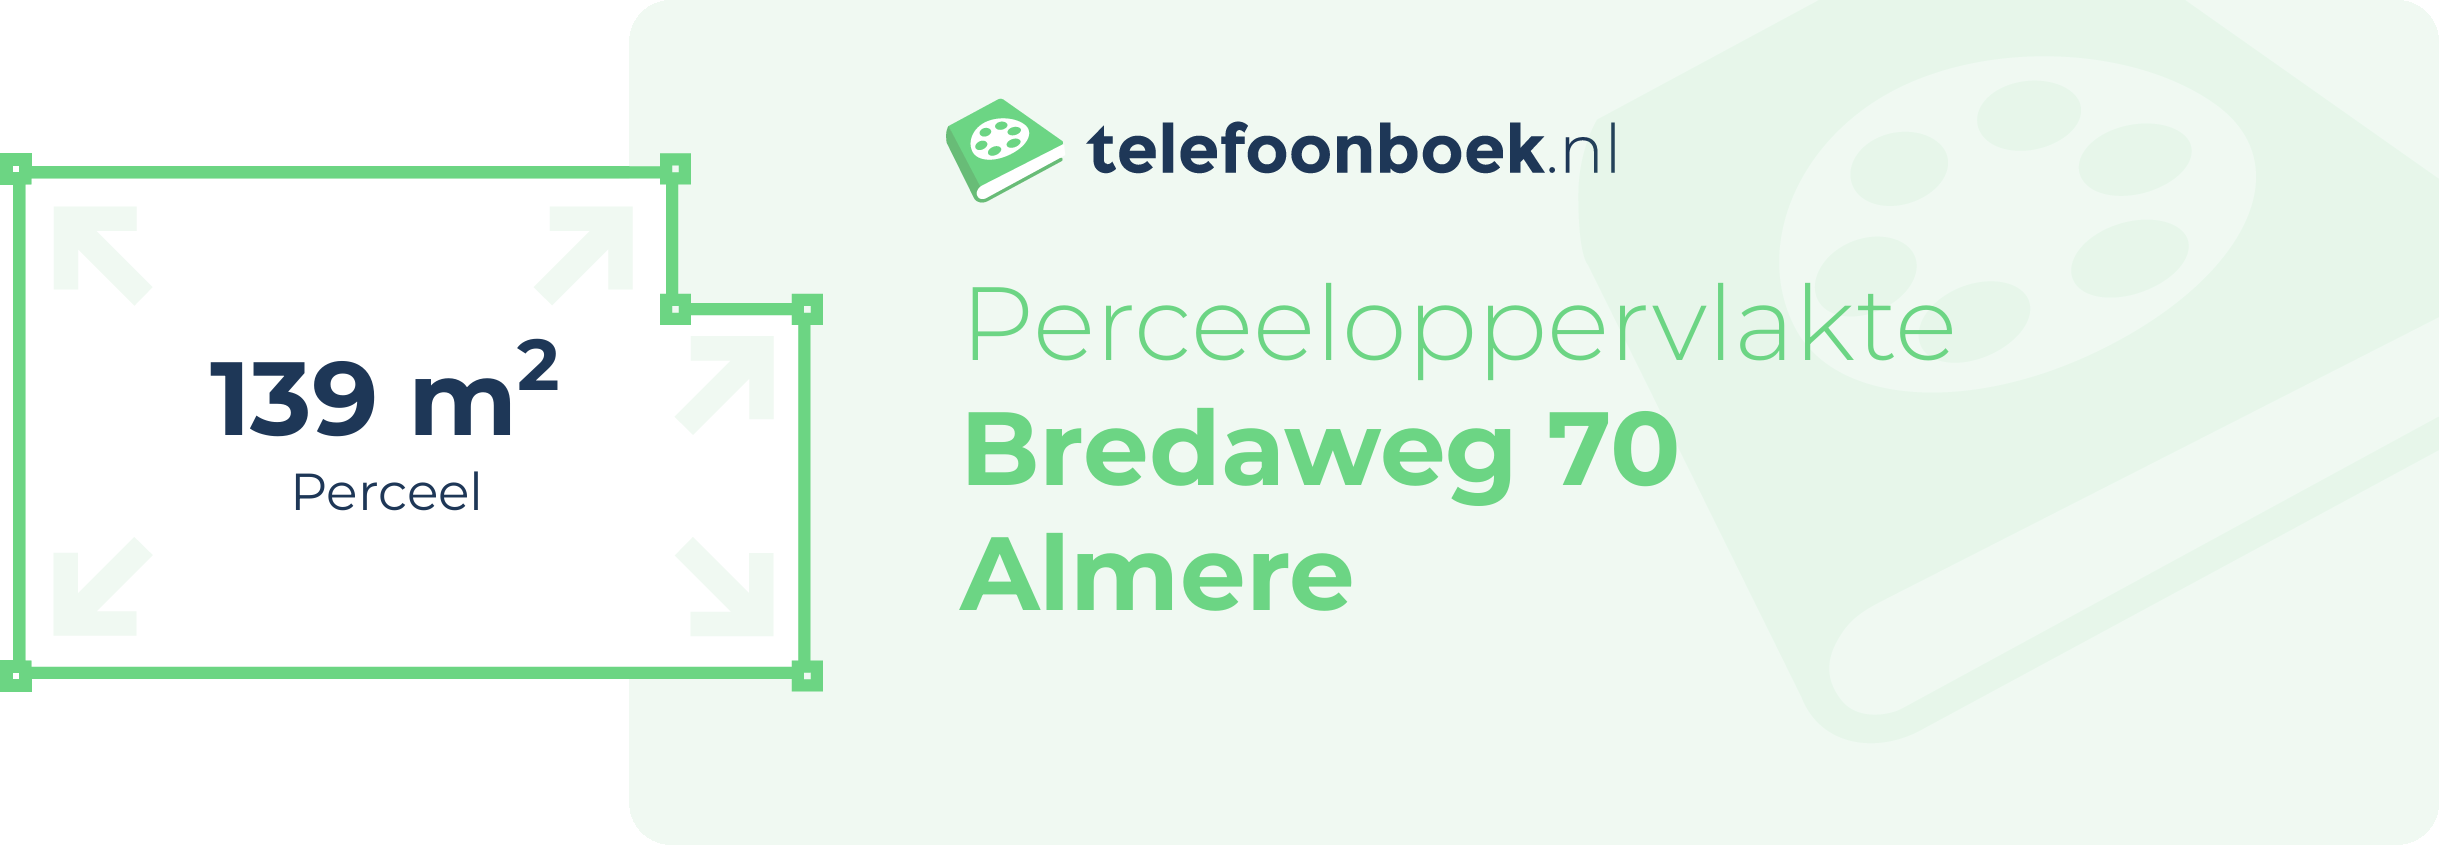 Perceeloppervlakte Bredaweg 70 Almere